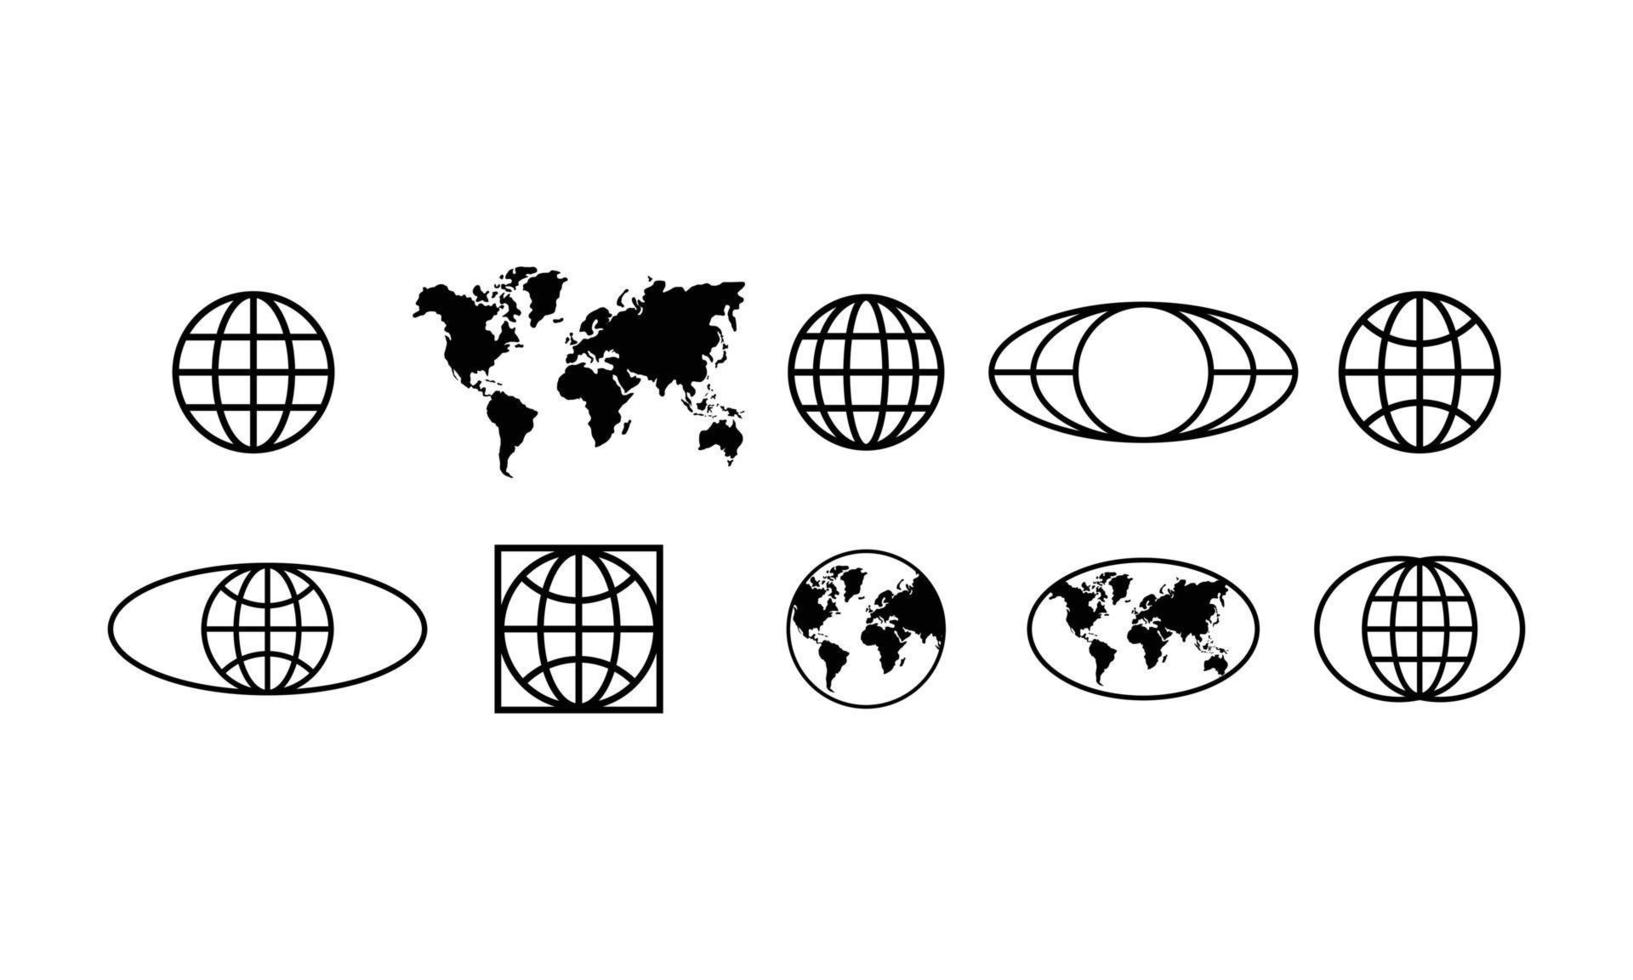 samlingsuppsättning av enkel jord, jordglob, värld och karta i svart och vit konturstil. geometriska former element isolerad på vit bakgrund i logotyp design vektor. vektor